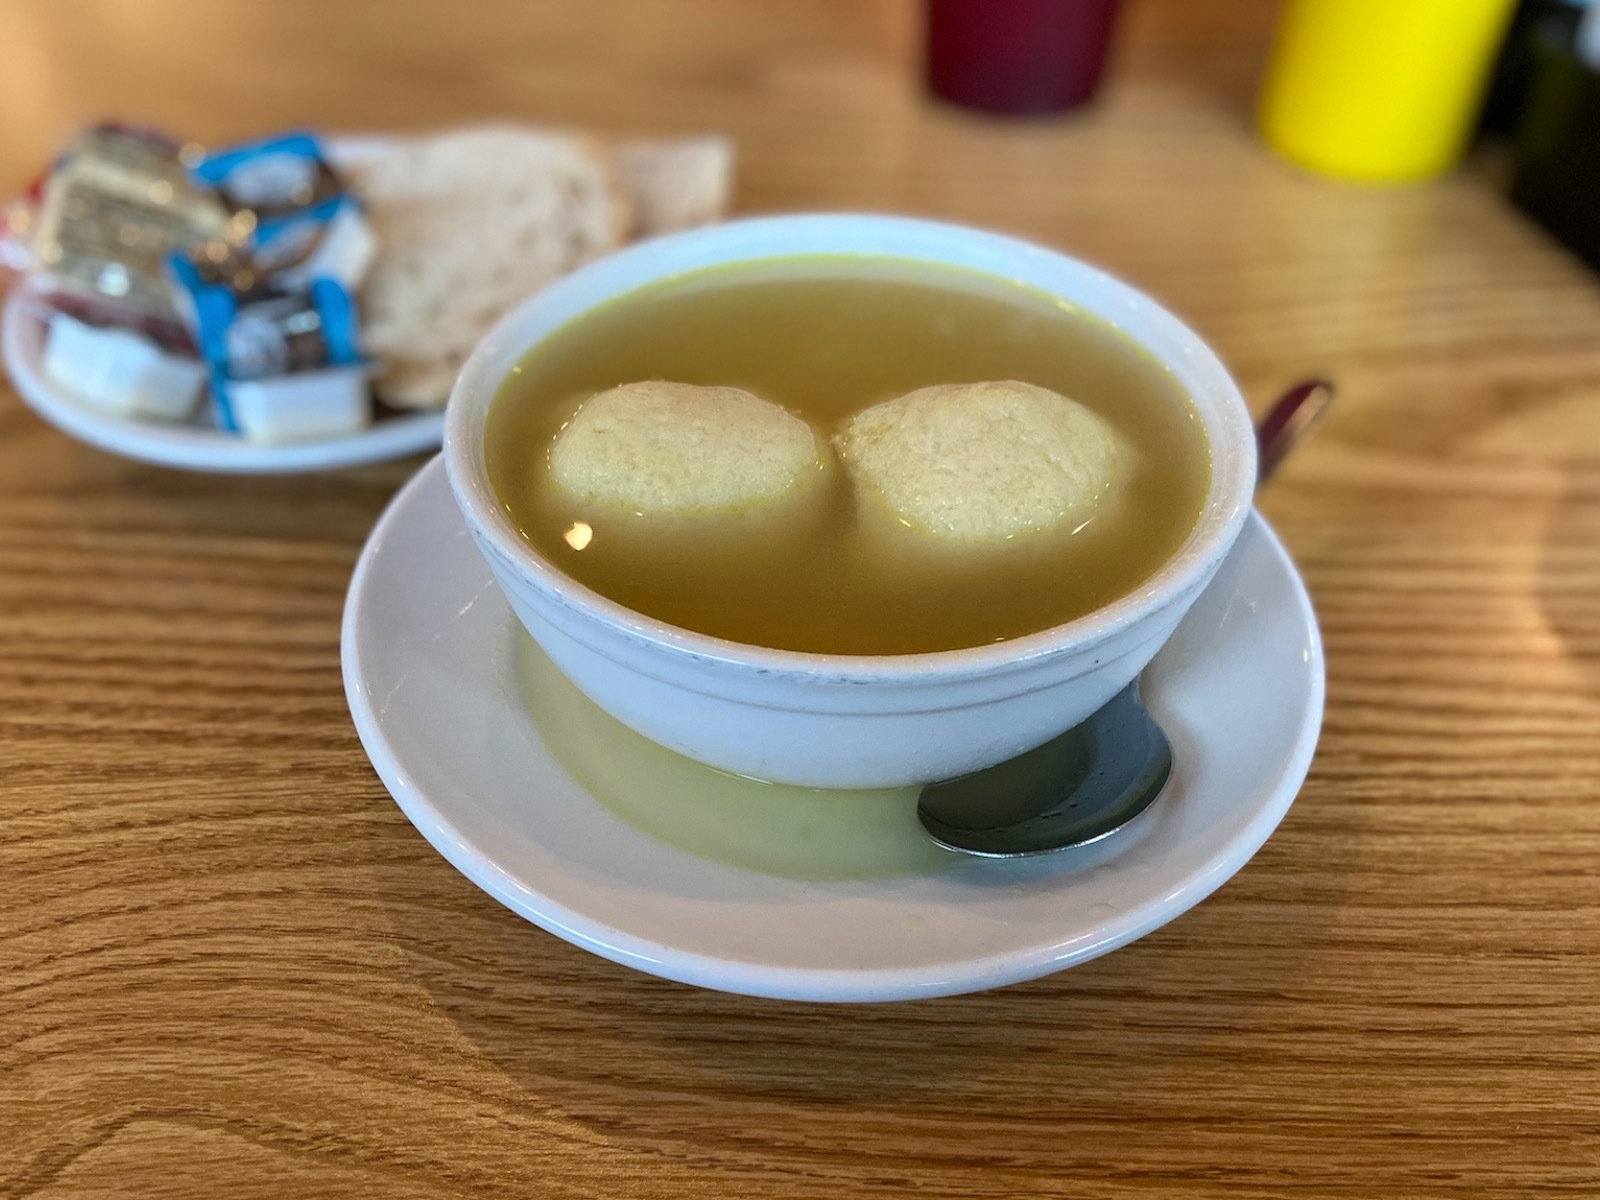 Soup Saturday: Matzo ball soup from Benji's Deli